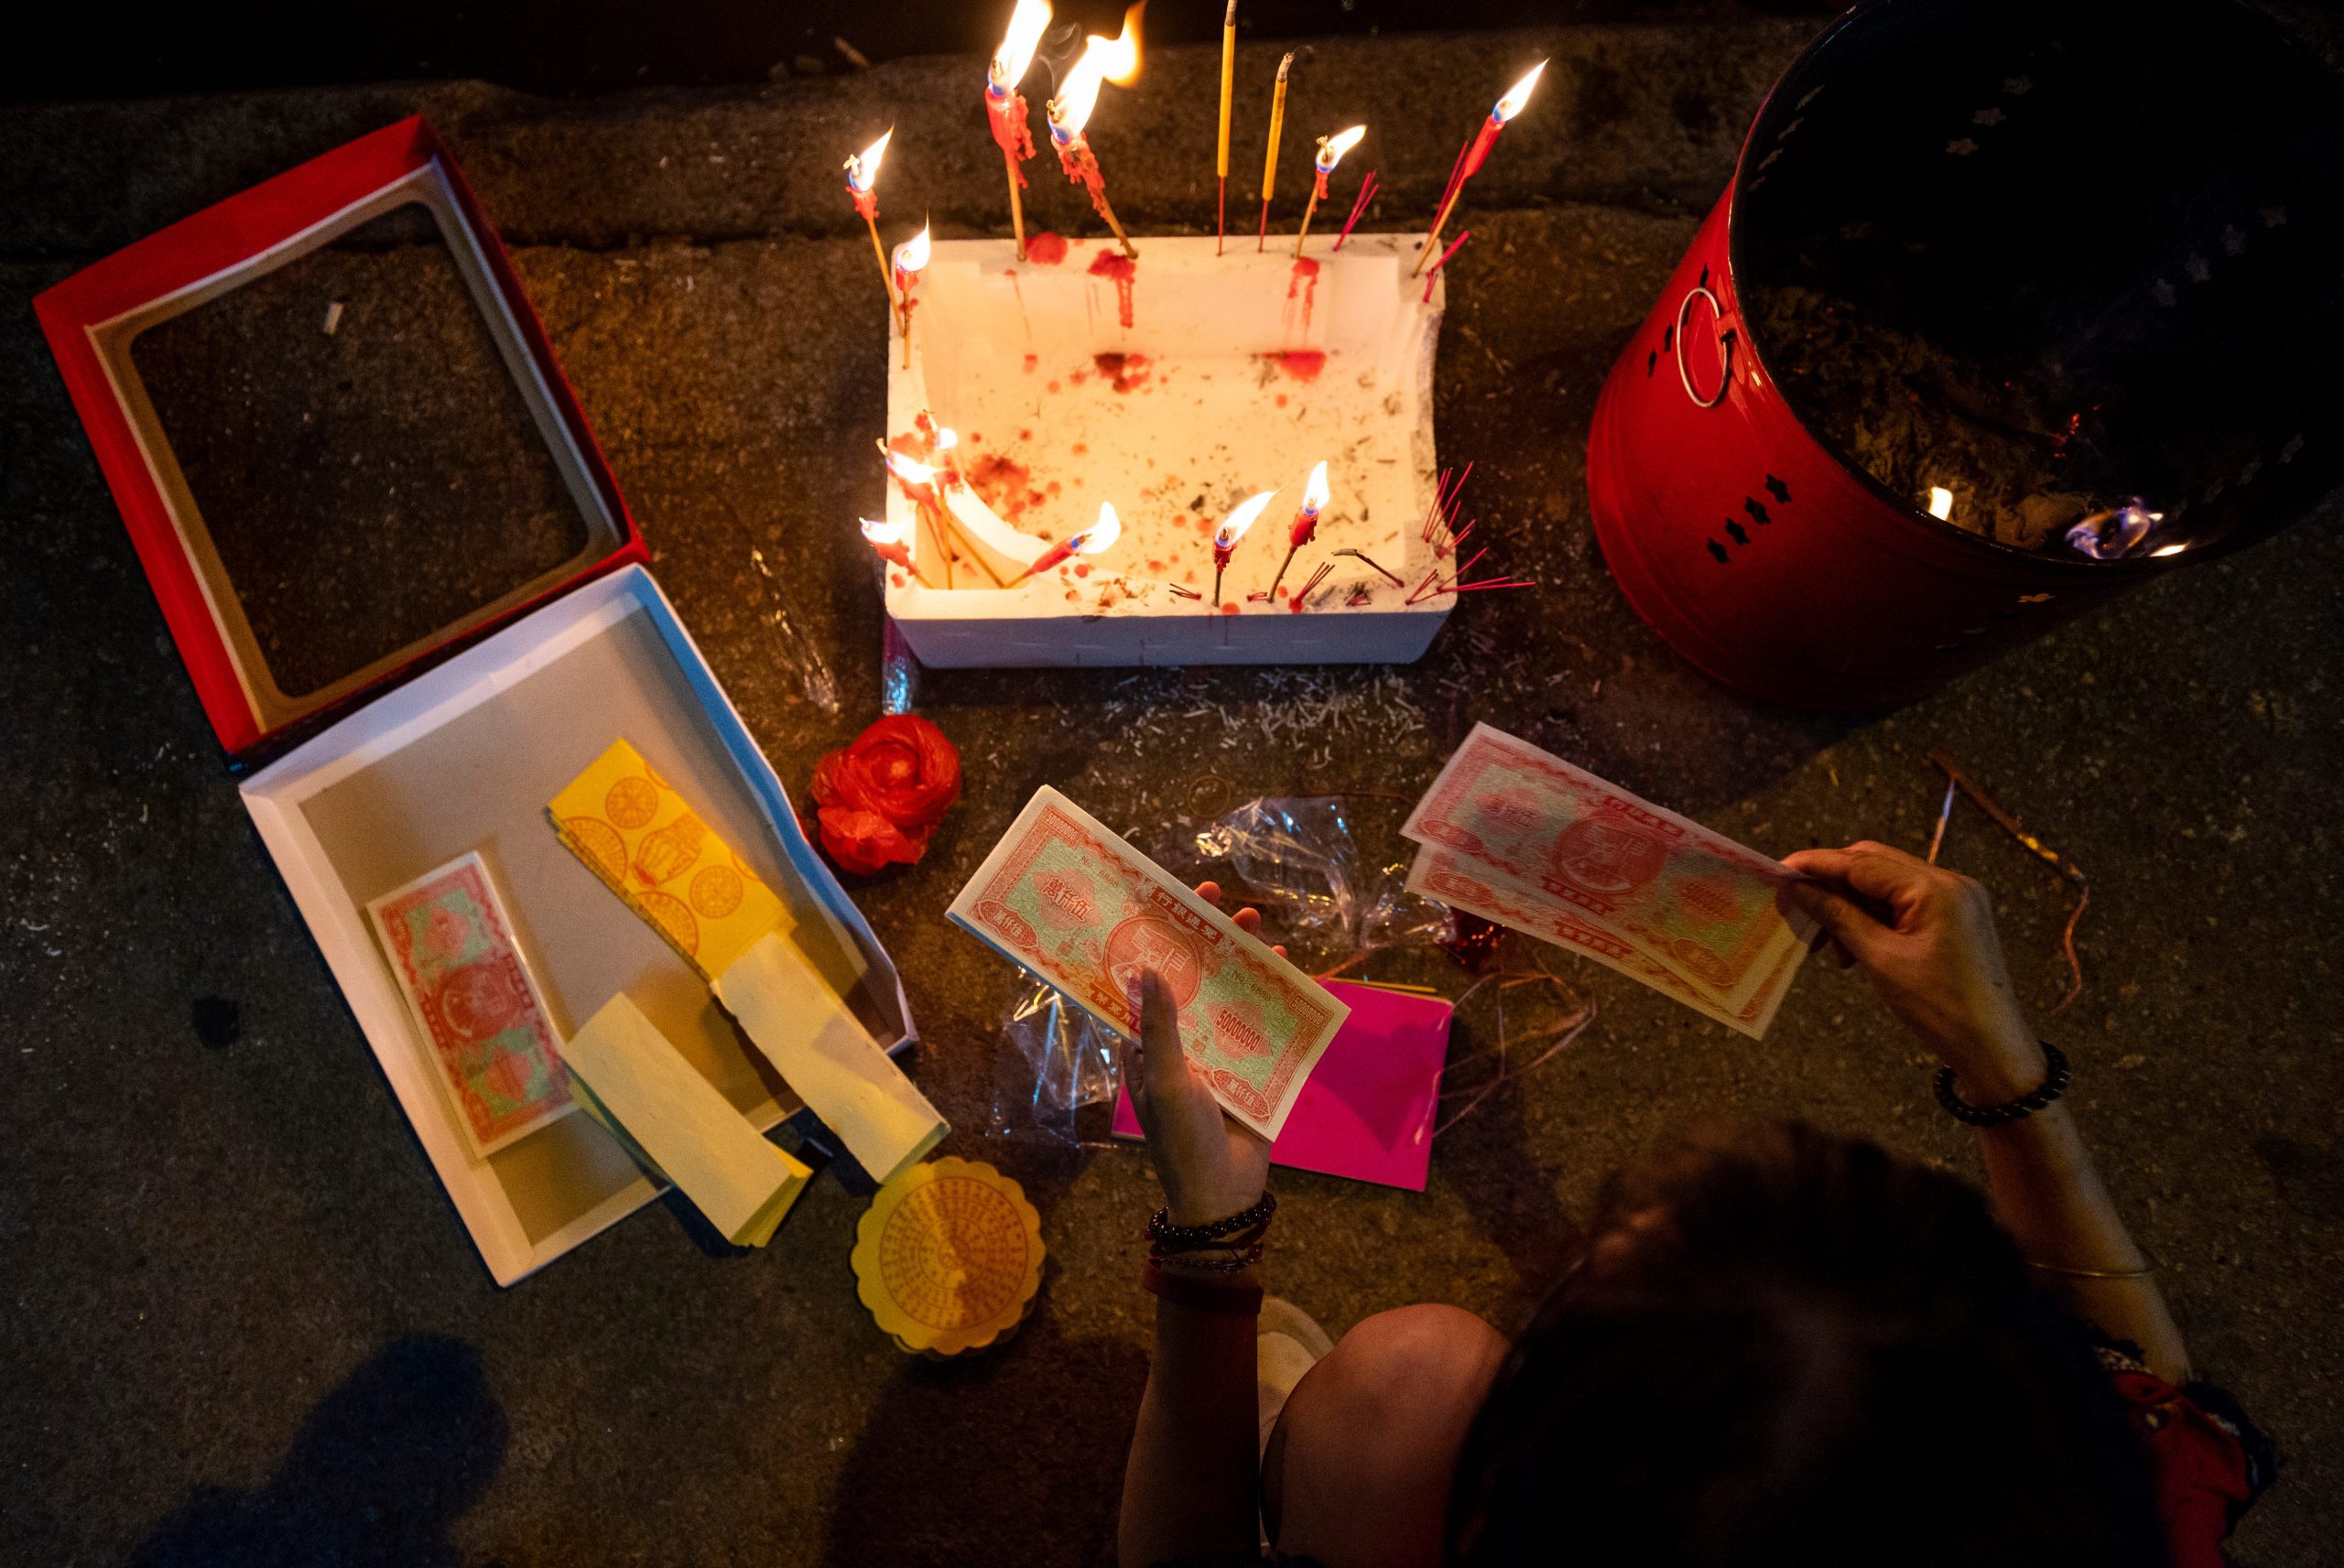 An overhead view of a Hong Kong resident preparing hell money and burning joss sticks.